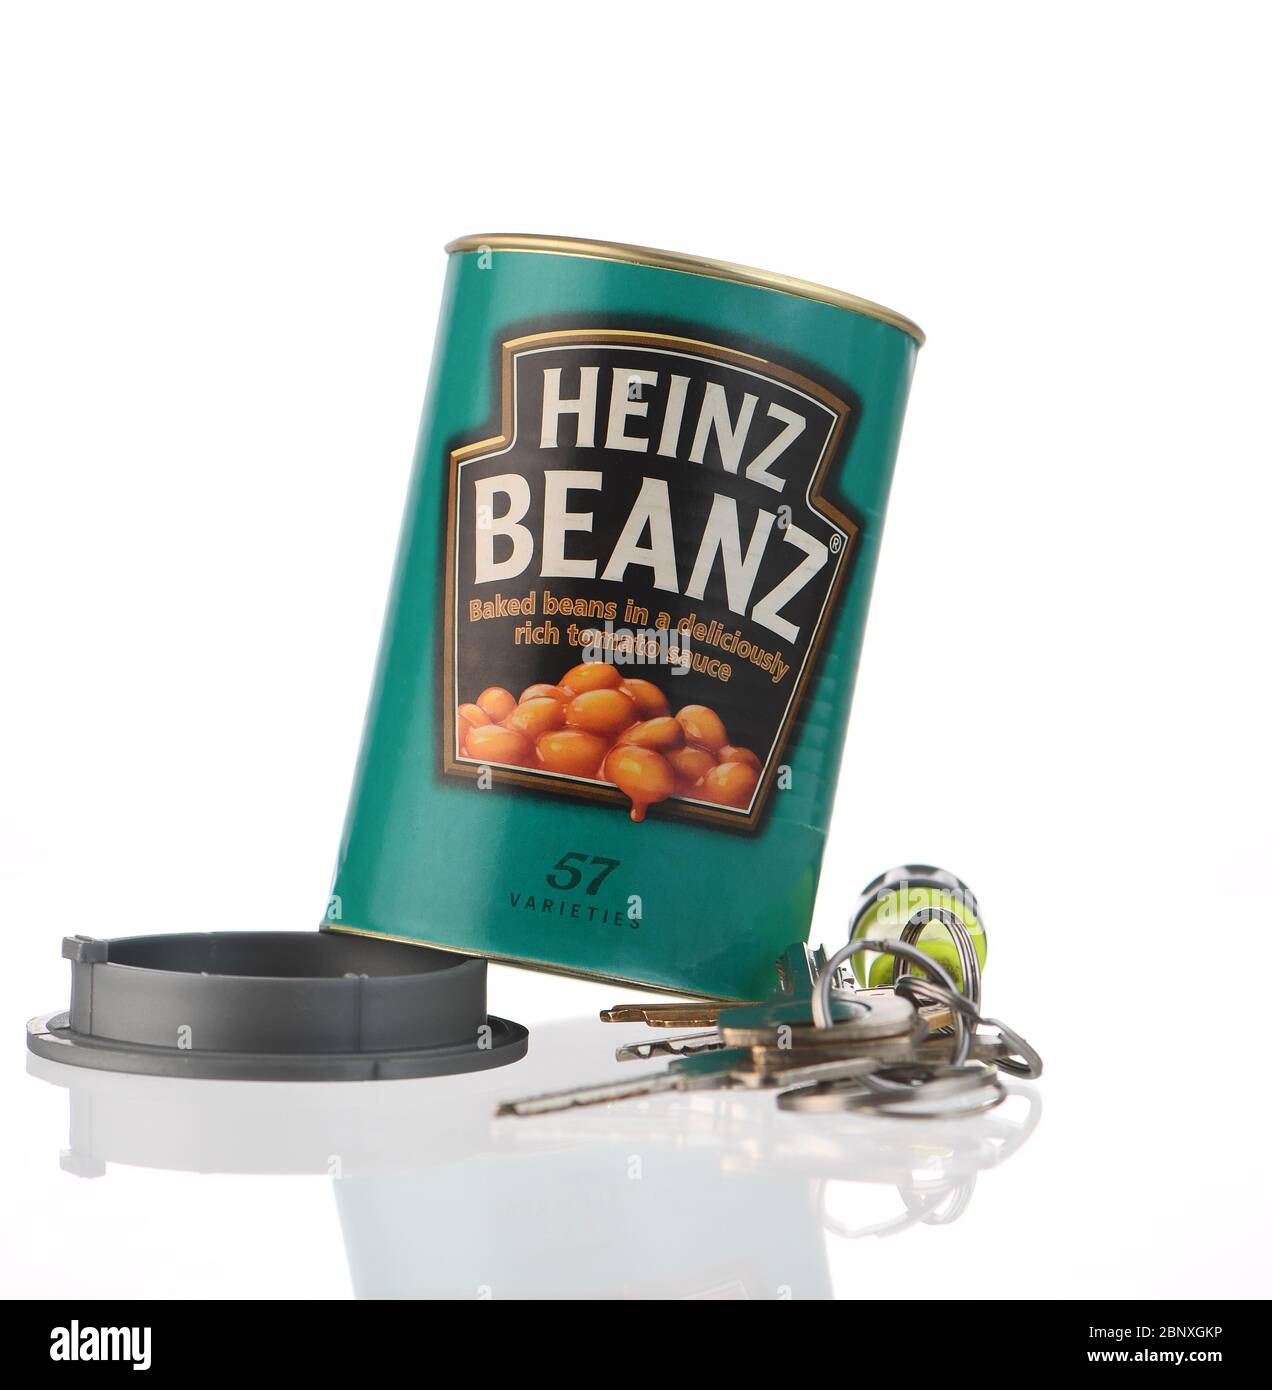 SicherheitsDose, eine gefälschte Heinz beanz Dose, die einen falschen Boden hat, damit man Wertsachen darin verstecken kann. Stockfoto